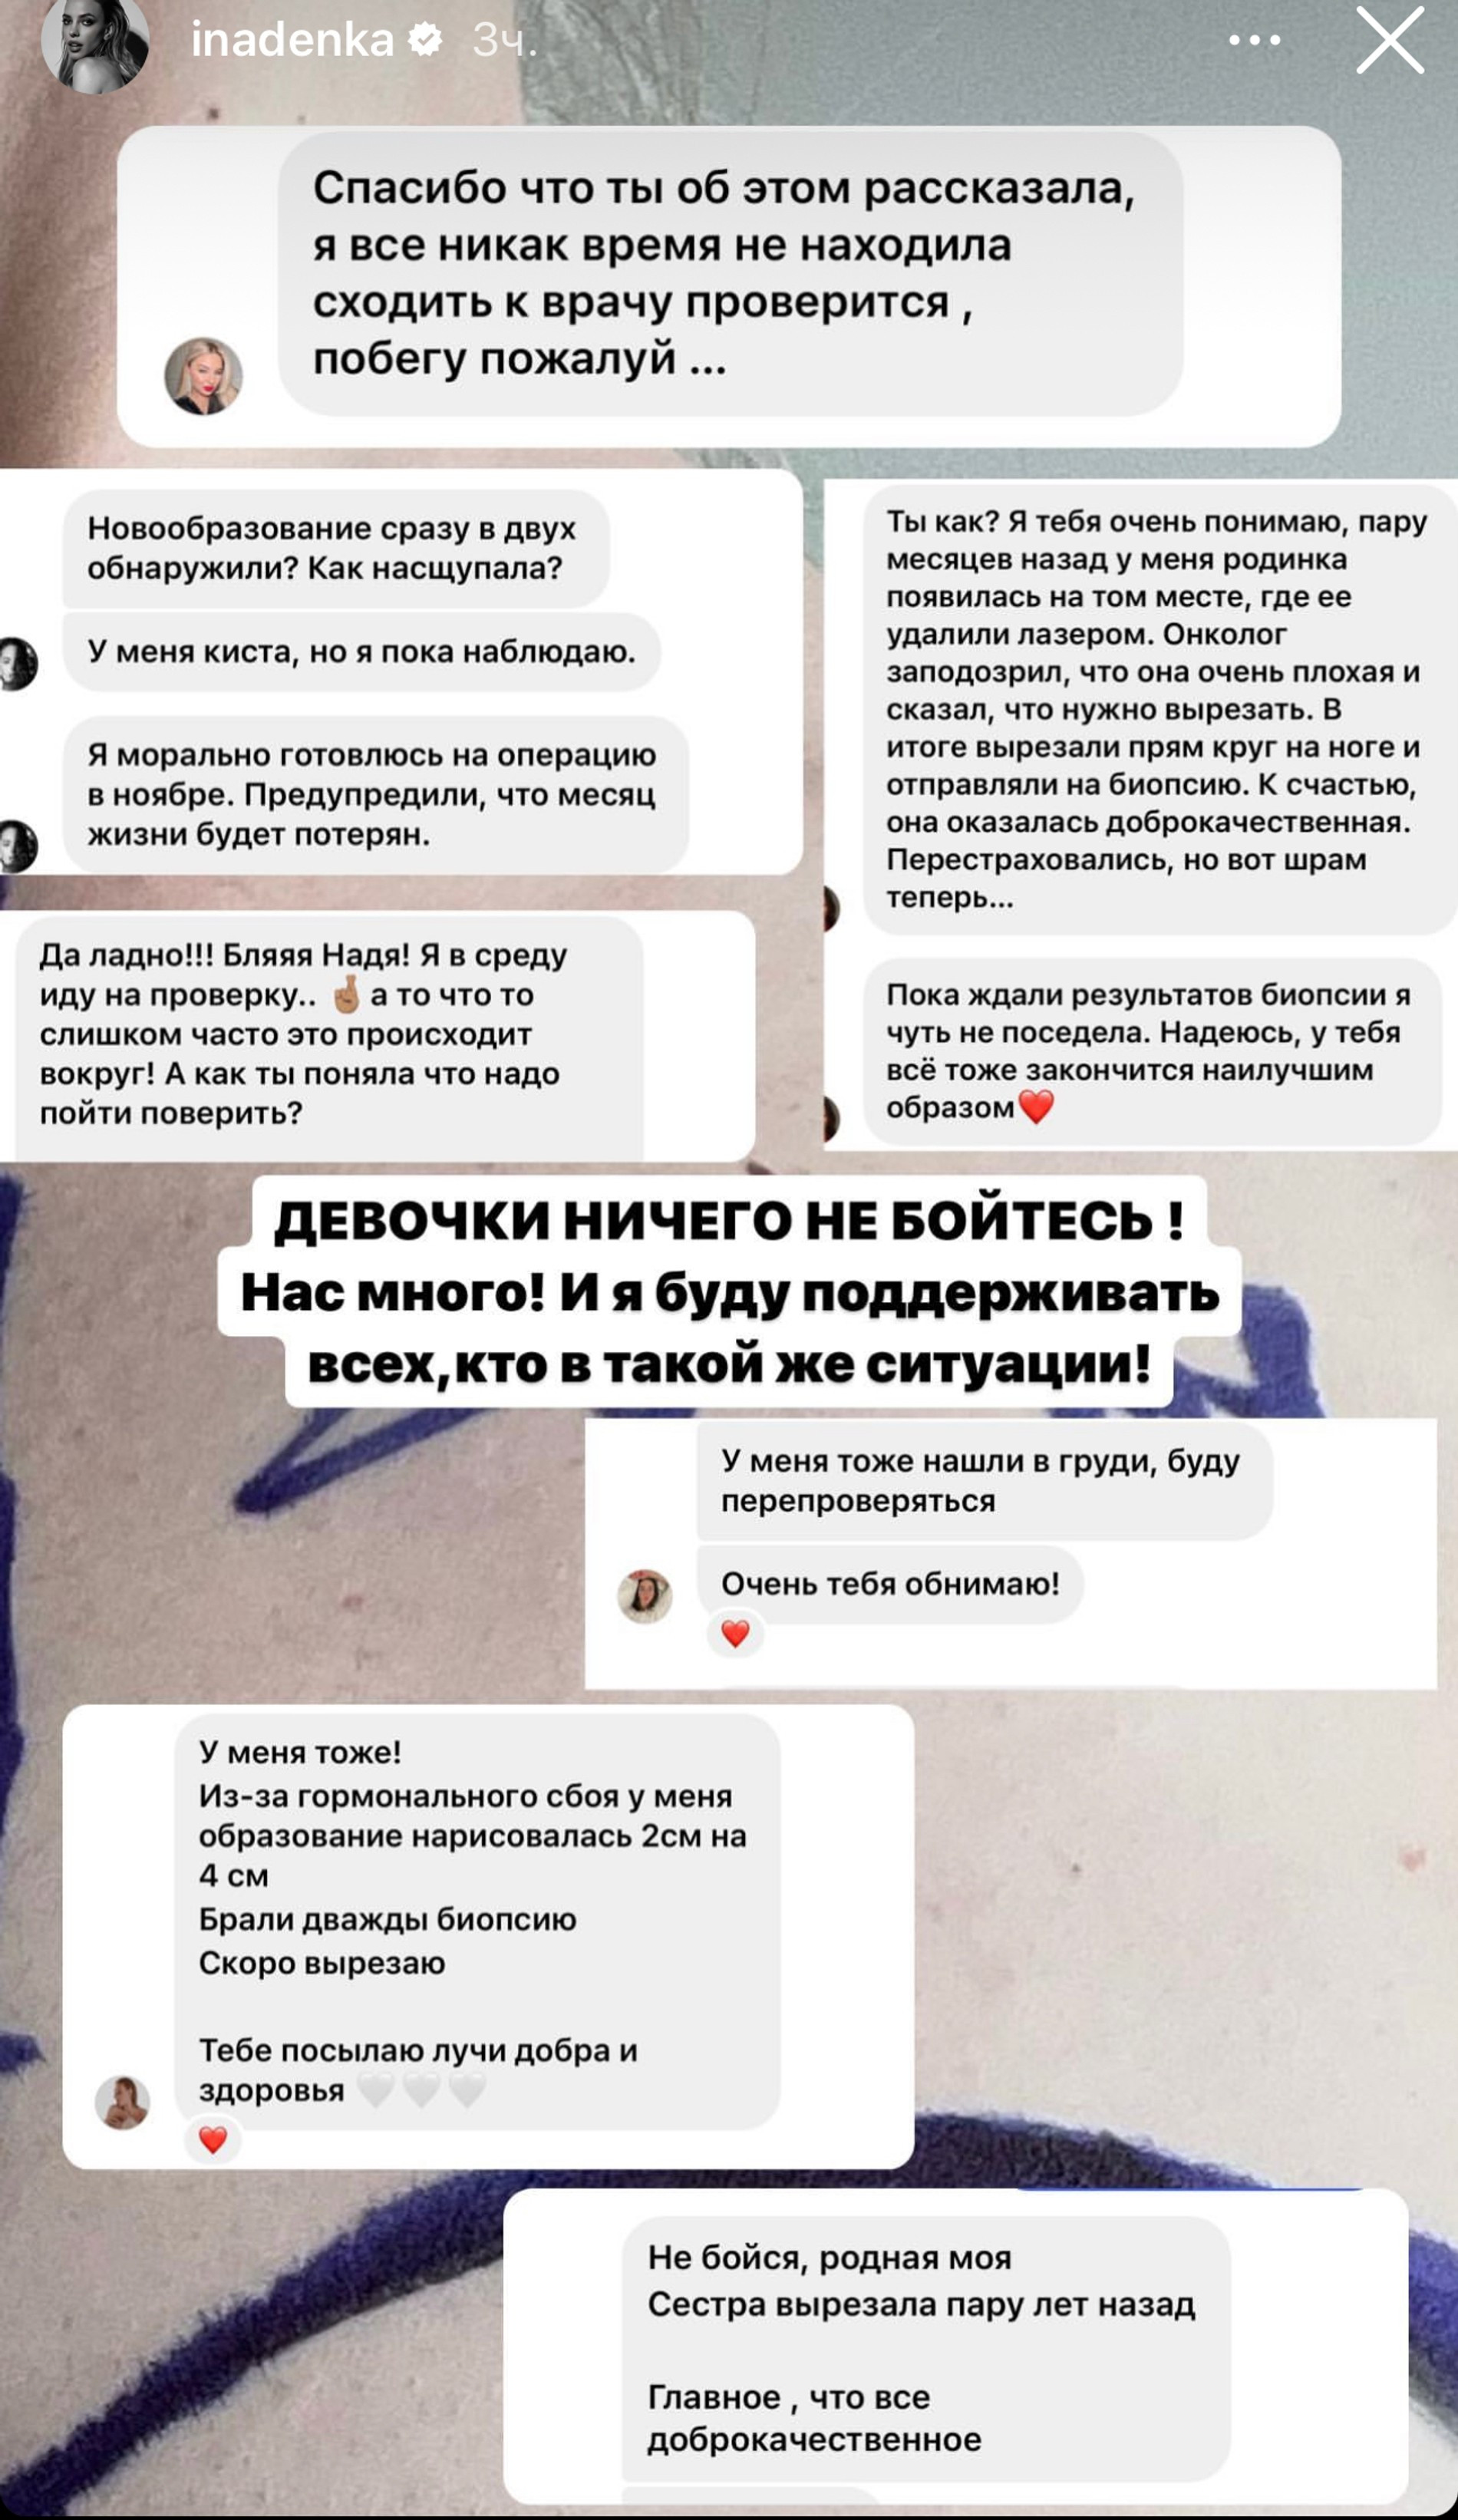 Реакции подписчиков на пост Надежды
Скриншот: Инстаграм (запрещен в РФ) @inadenka